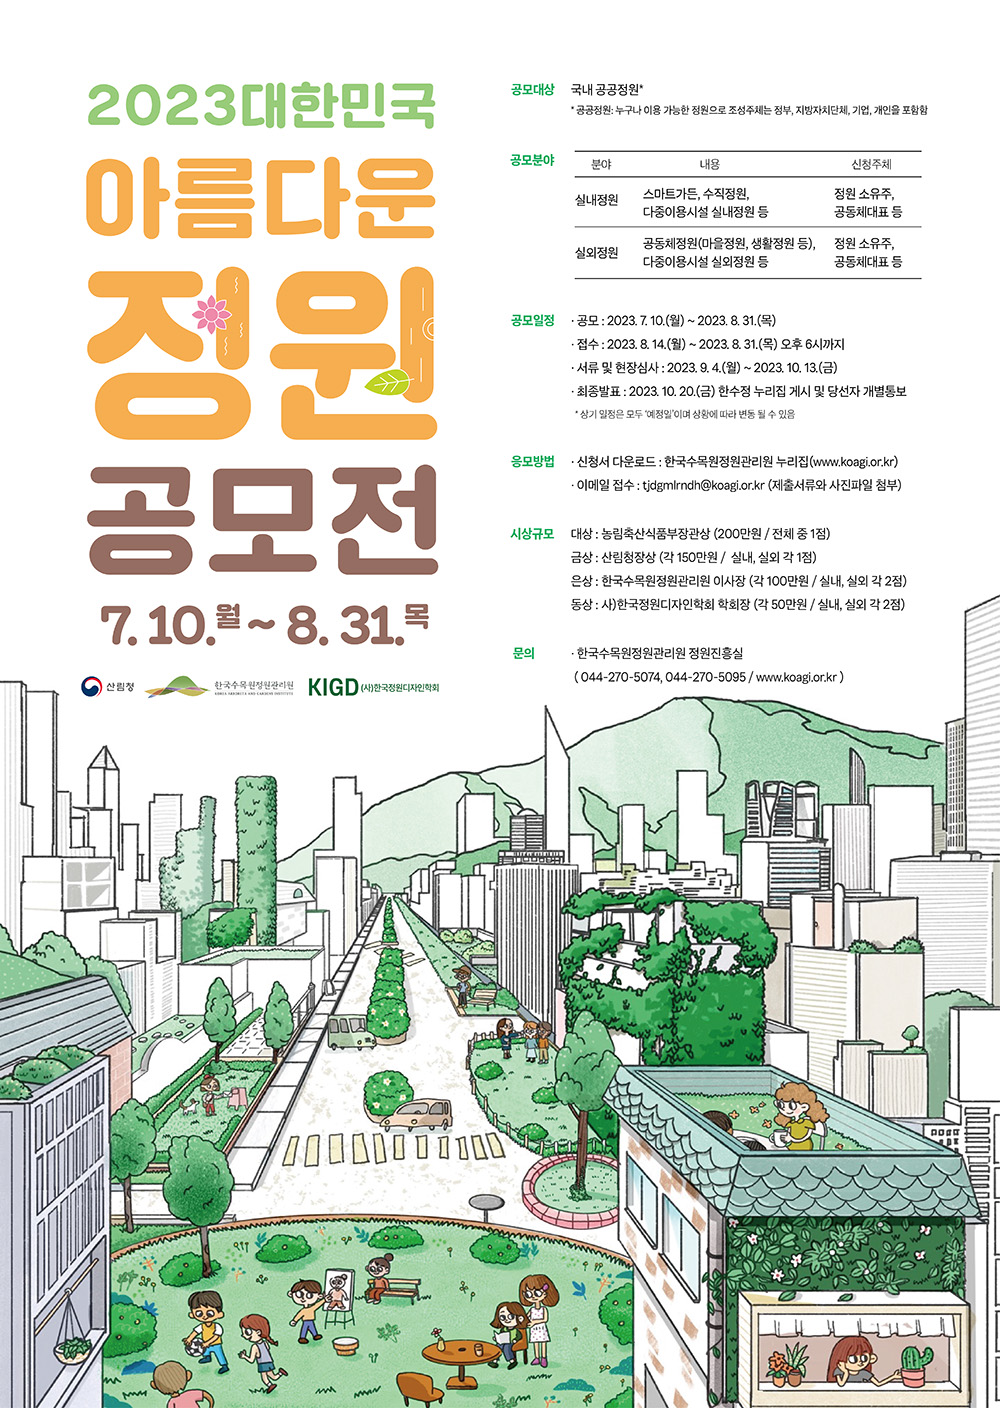 2023 대한민국 아름다운 정원 공모전 포스터